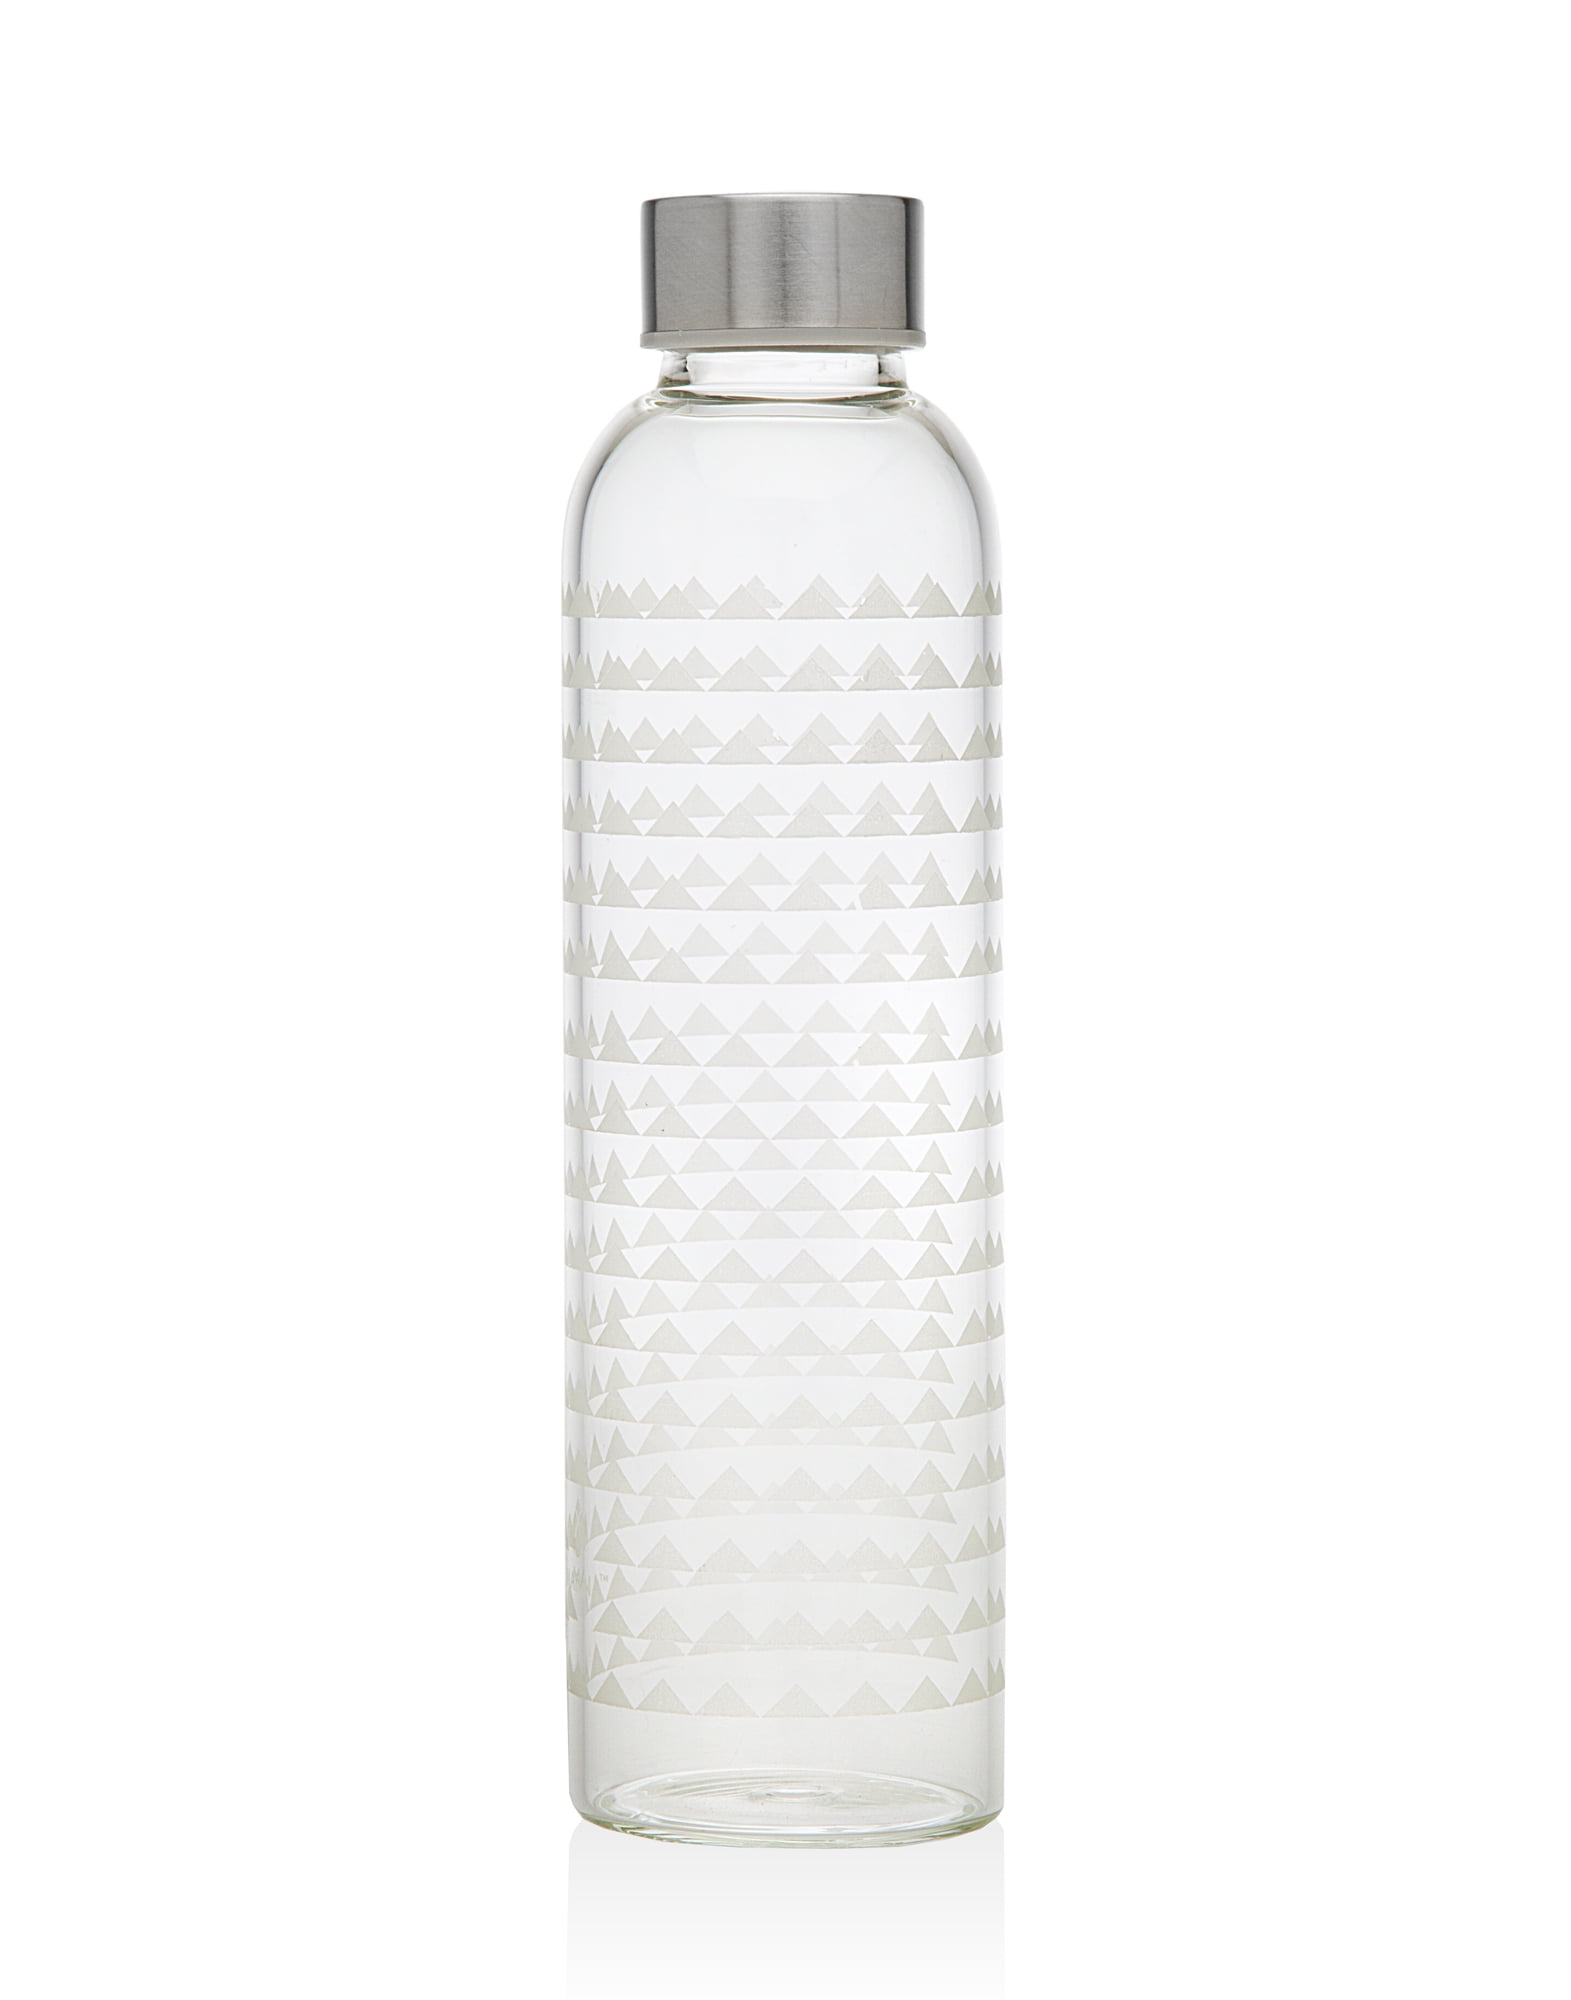 Godinger Glass Water Bottle Triangle design 